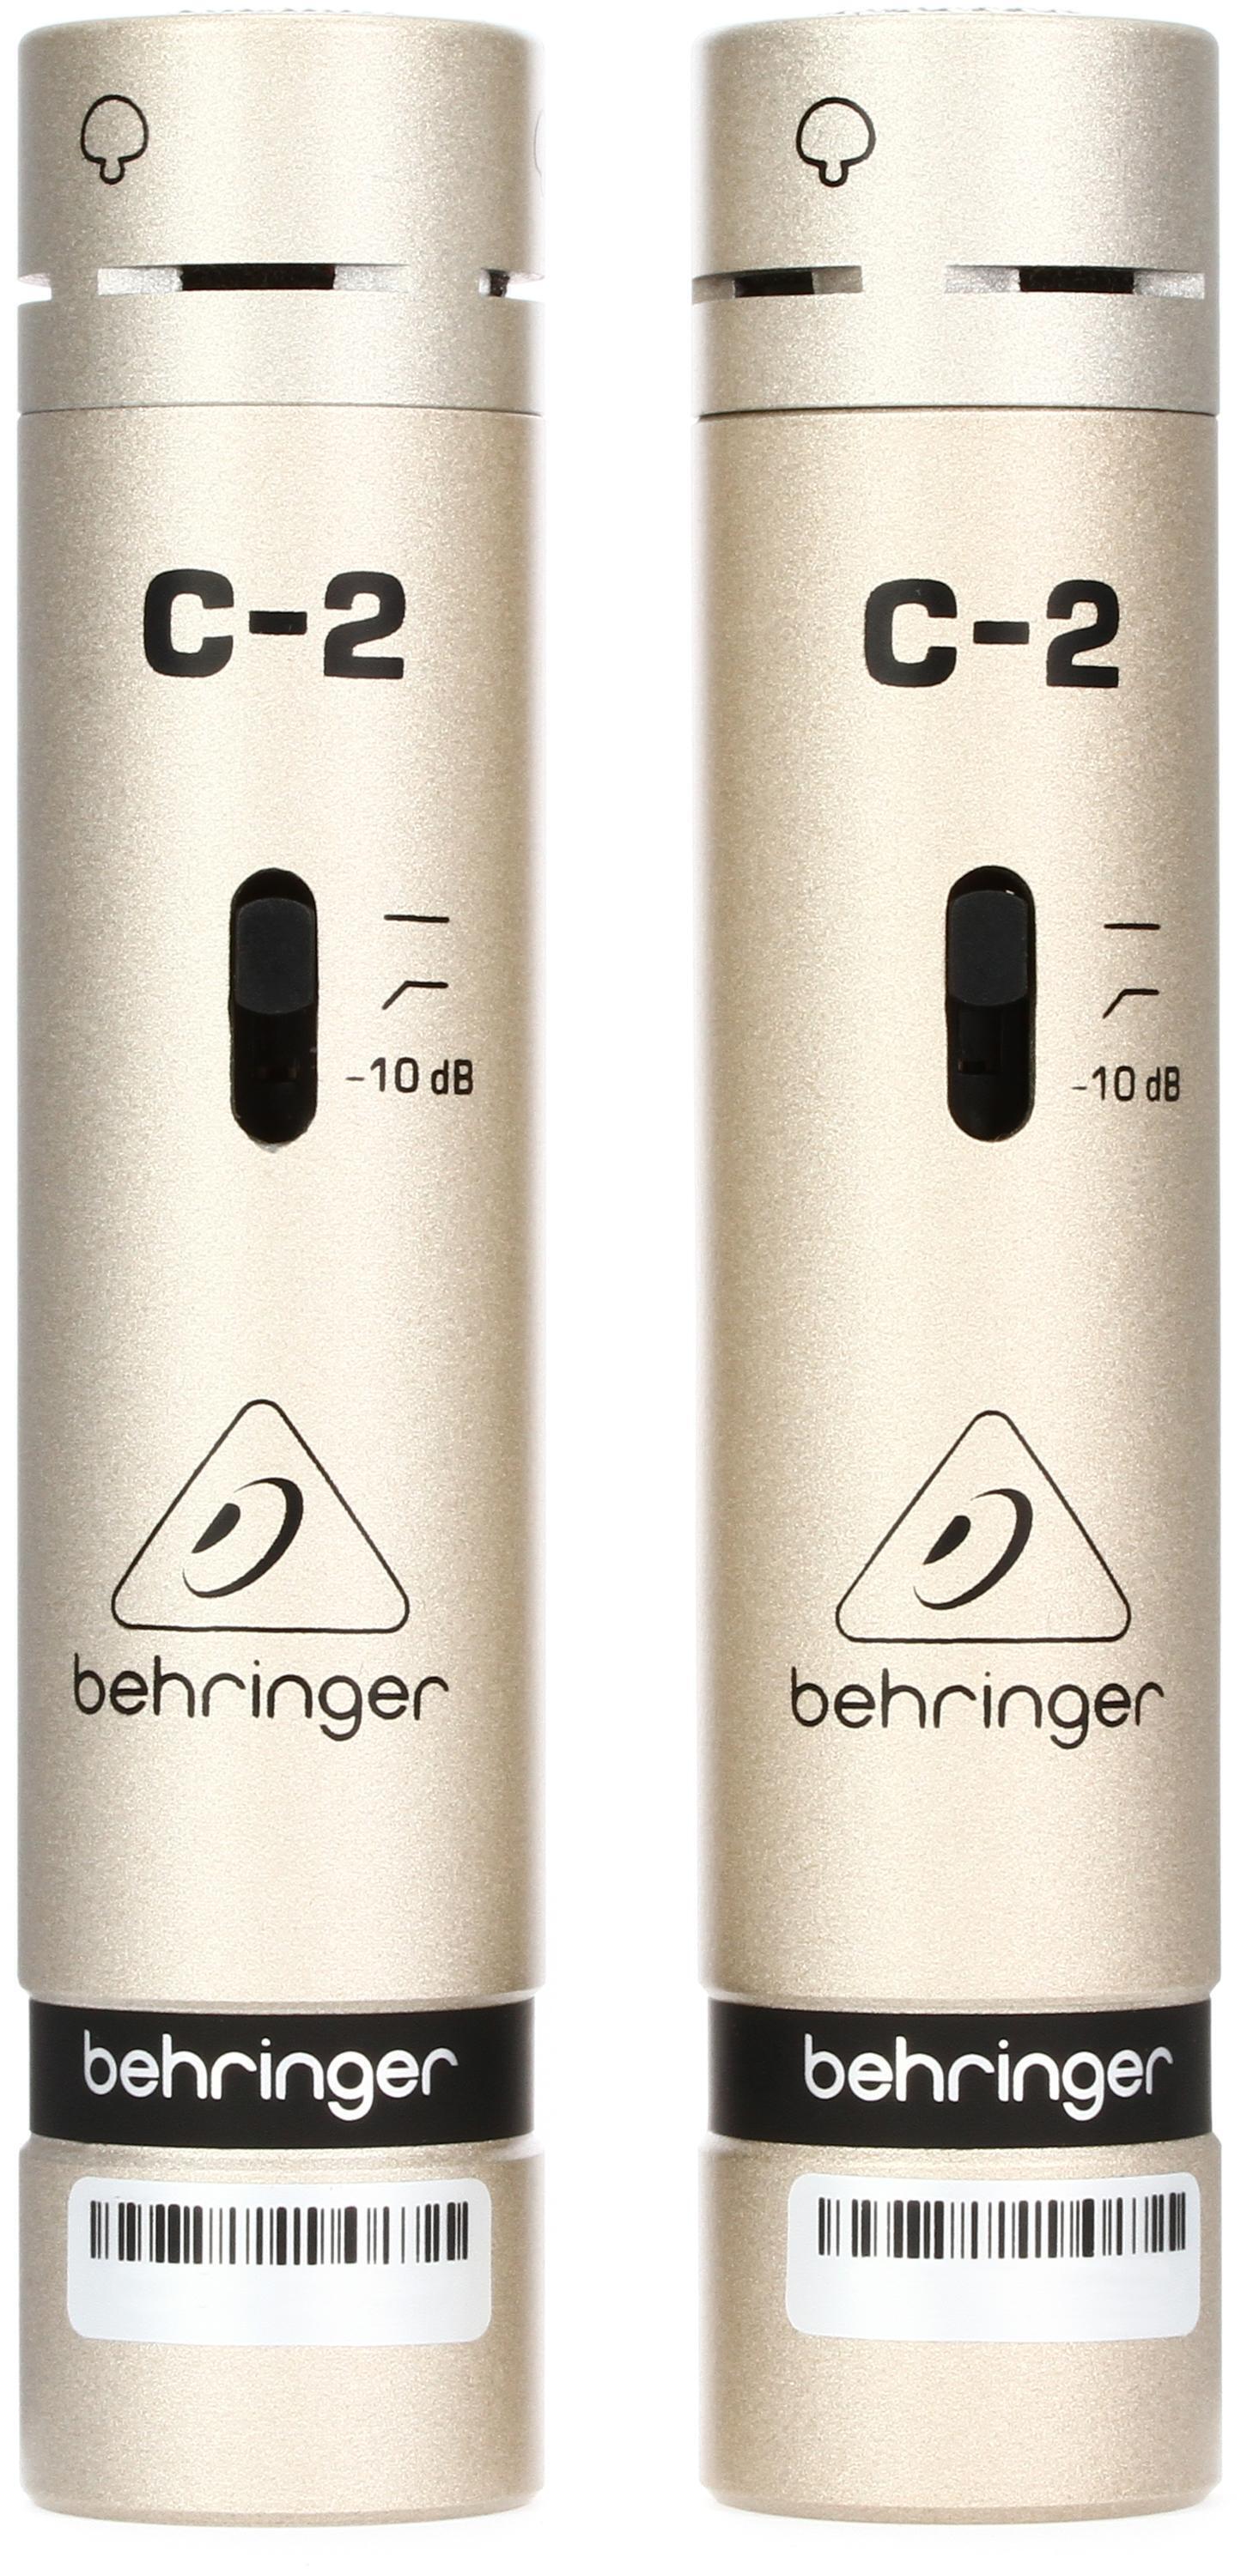 Behringer C-2 Matched Studio Condenser Microphones Bundle with 